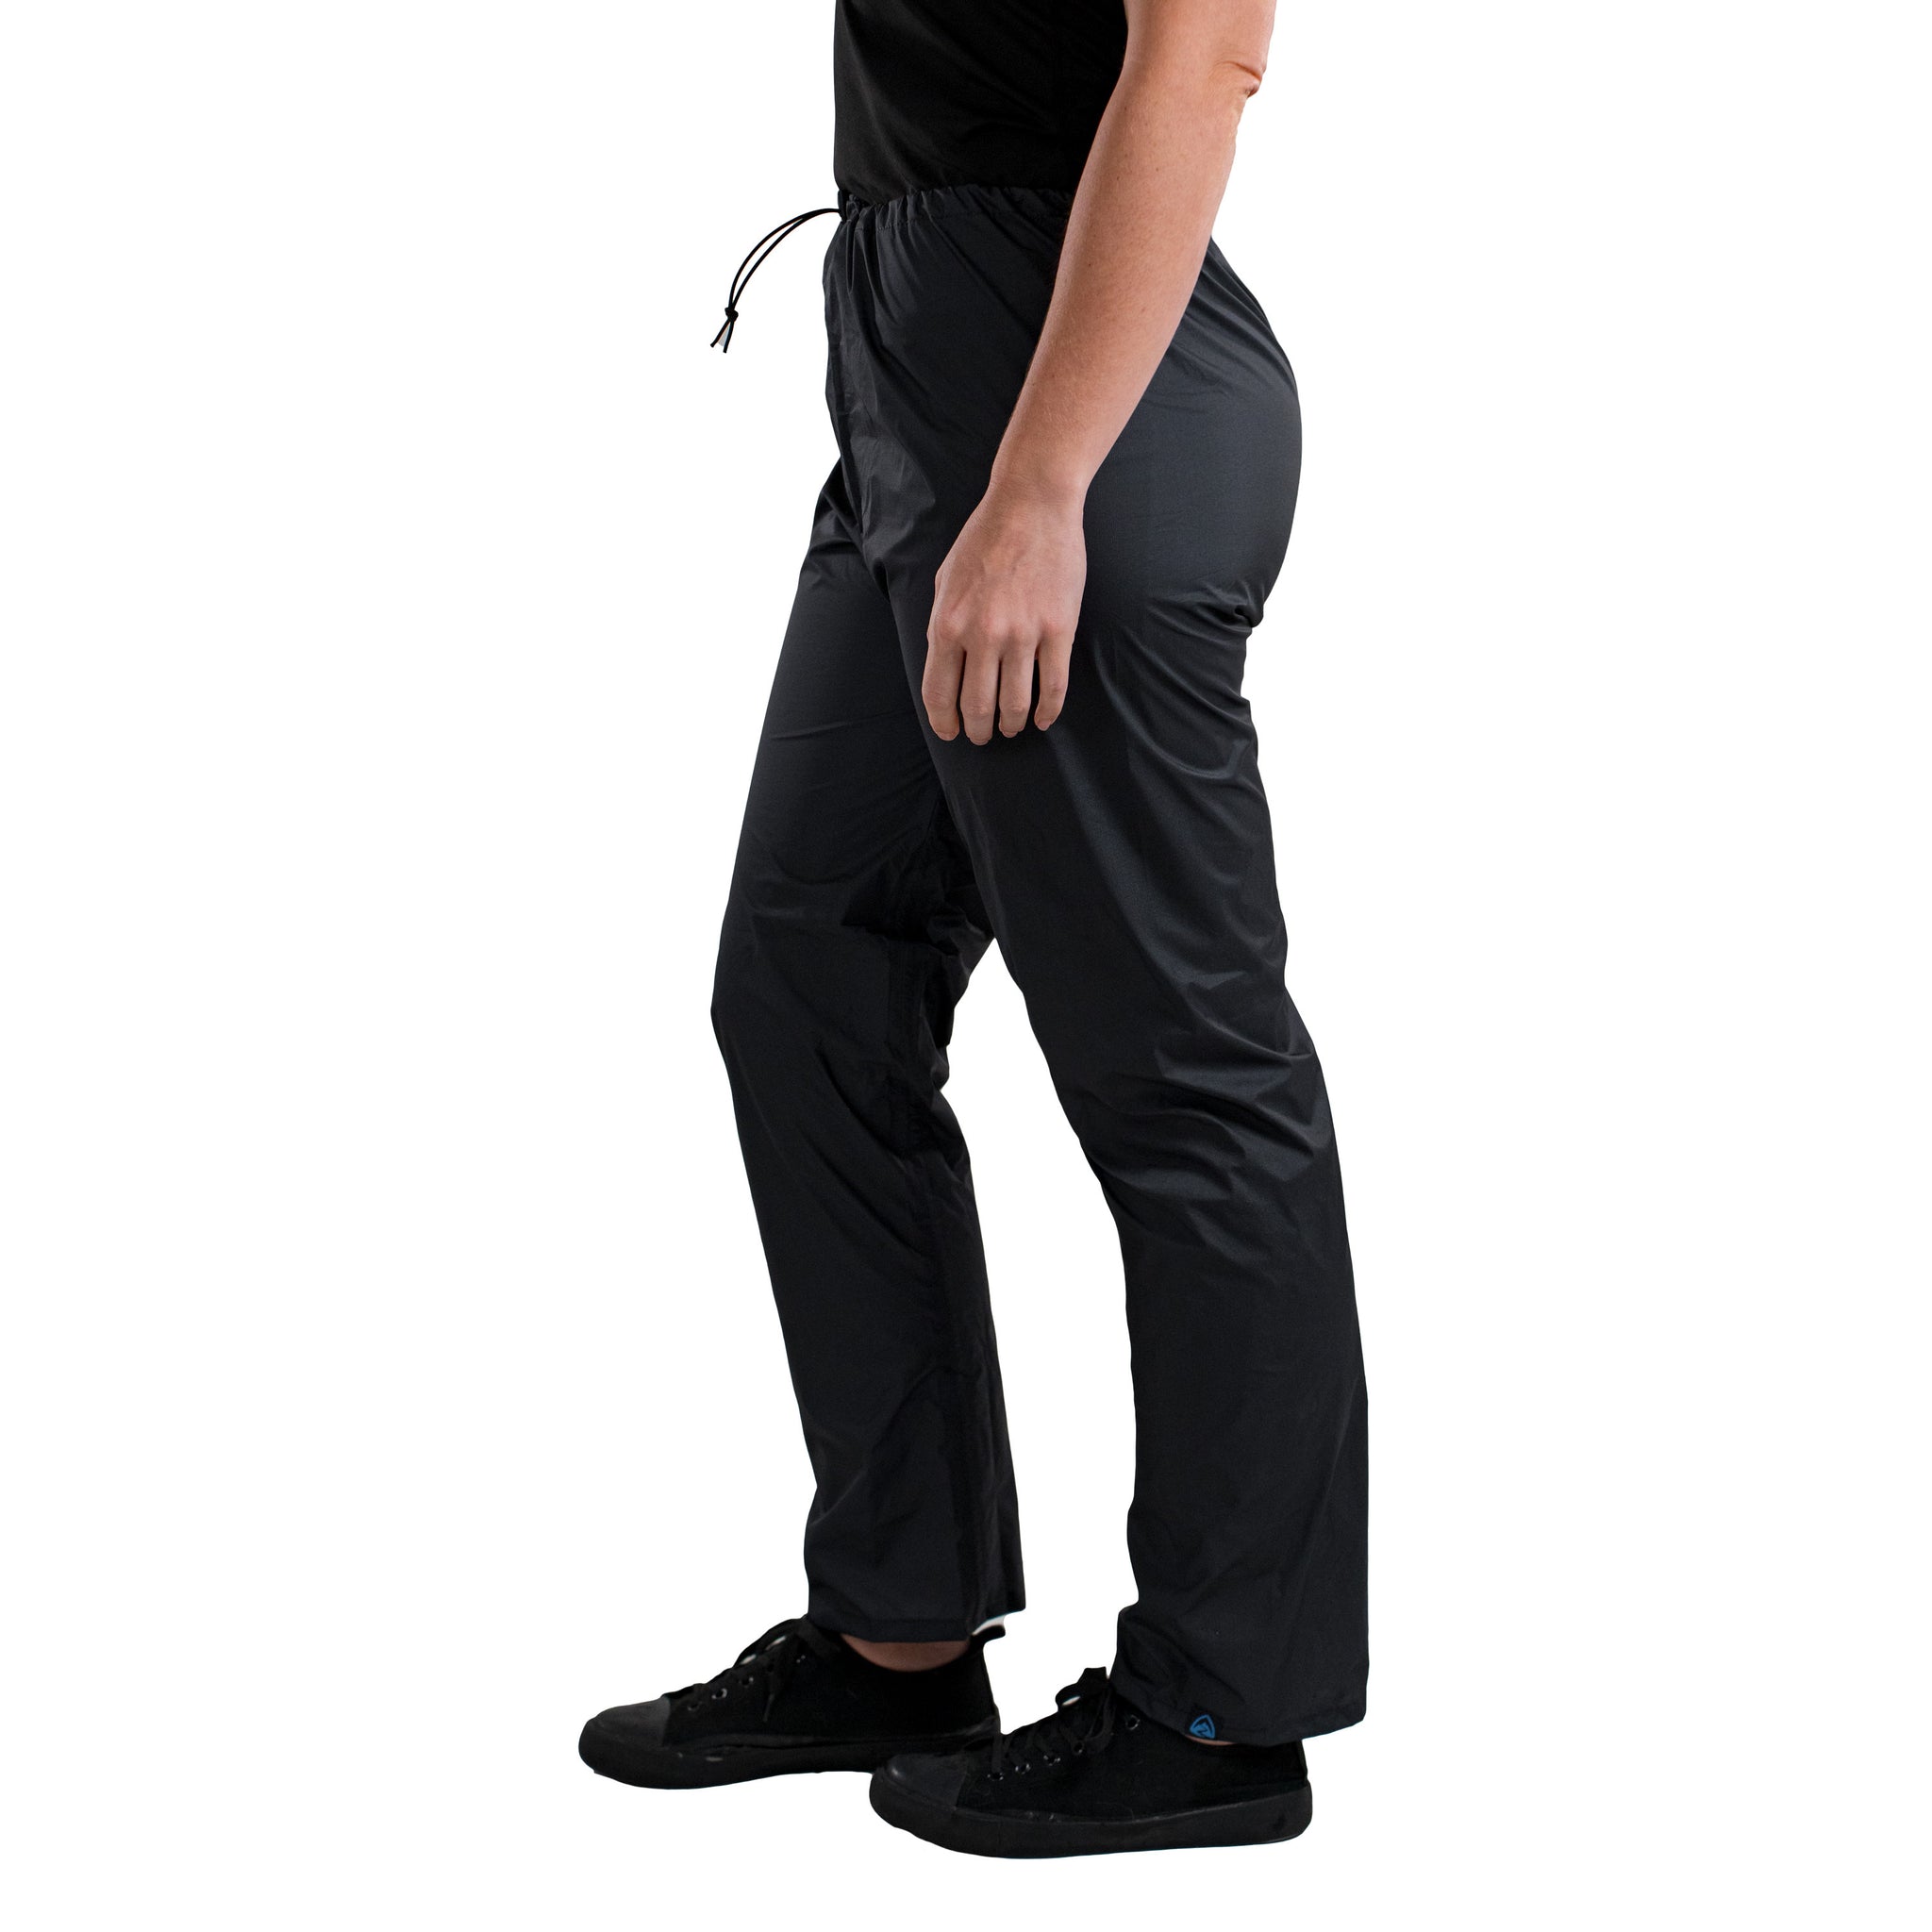 Bonds Women's Move Straight Leg Track Pants - Black - Size Large